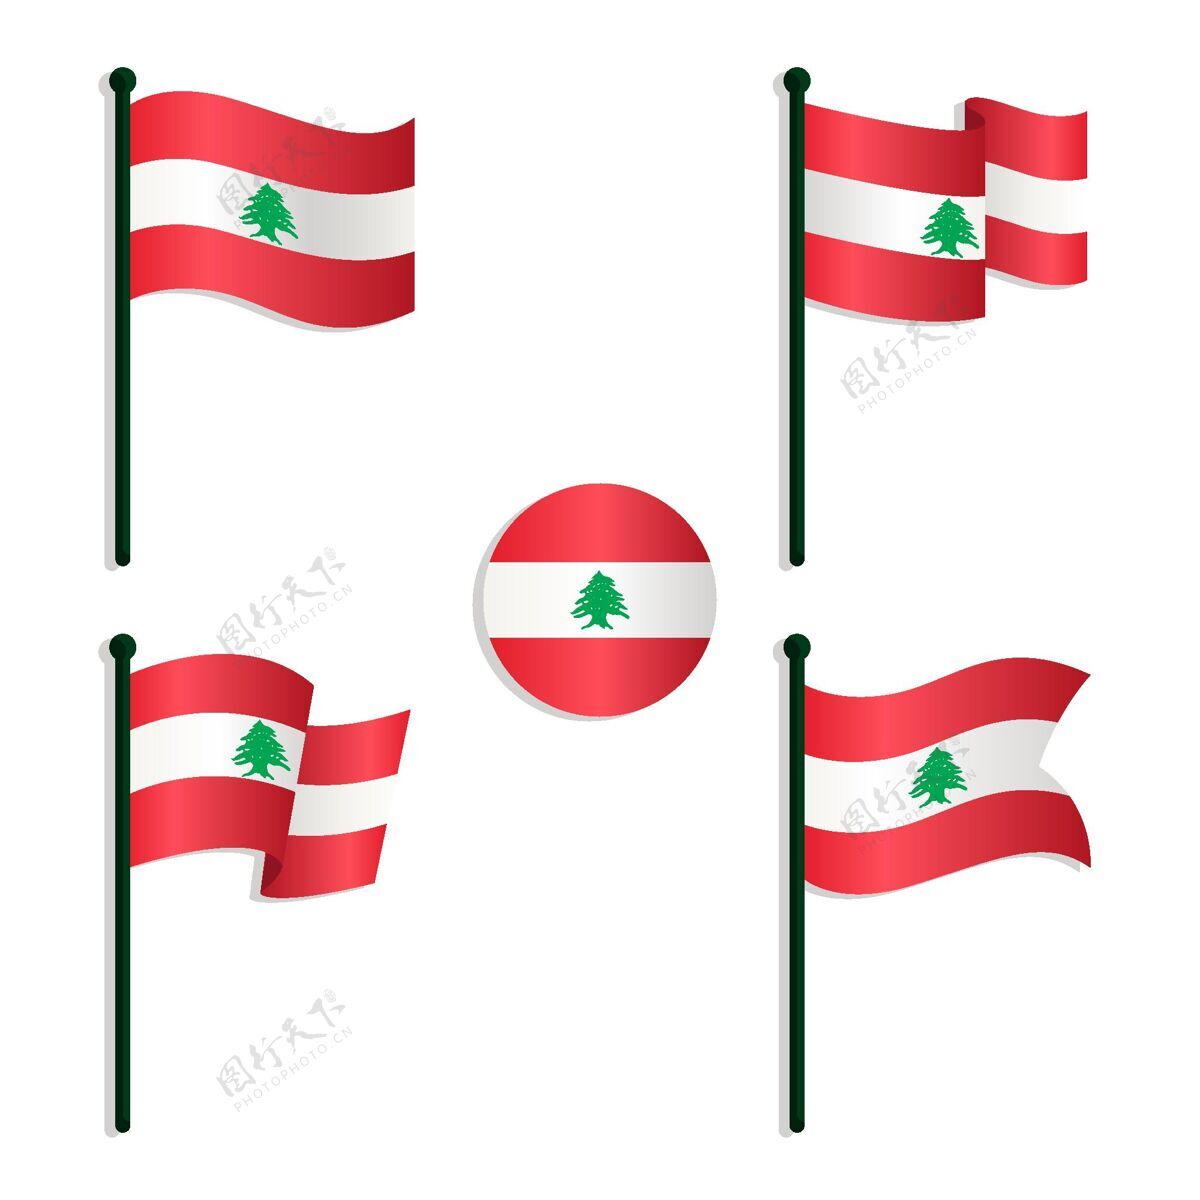 黎巴嫩国旗. 正式颜色. 平面矢量图插图 向量例证. 插画 包括有 平面, 映射, 危险的, 国家（地区） - 252212272